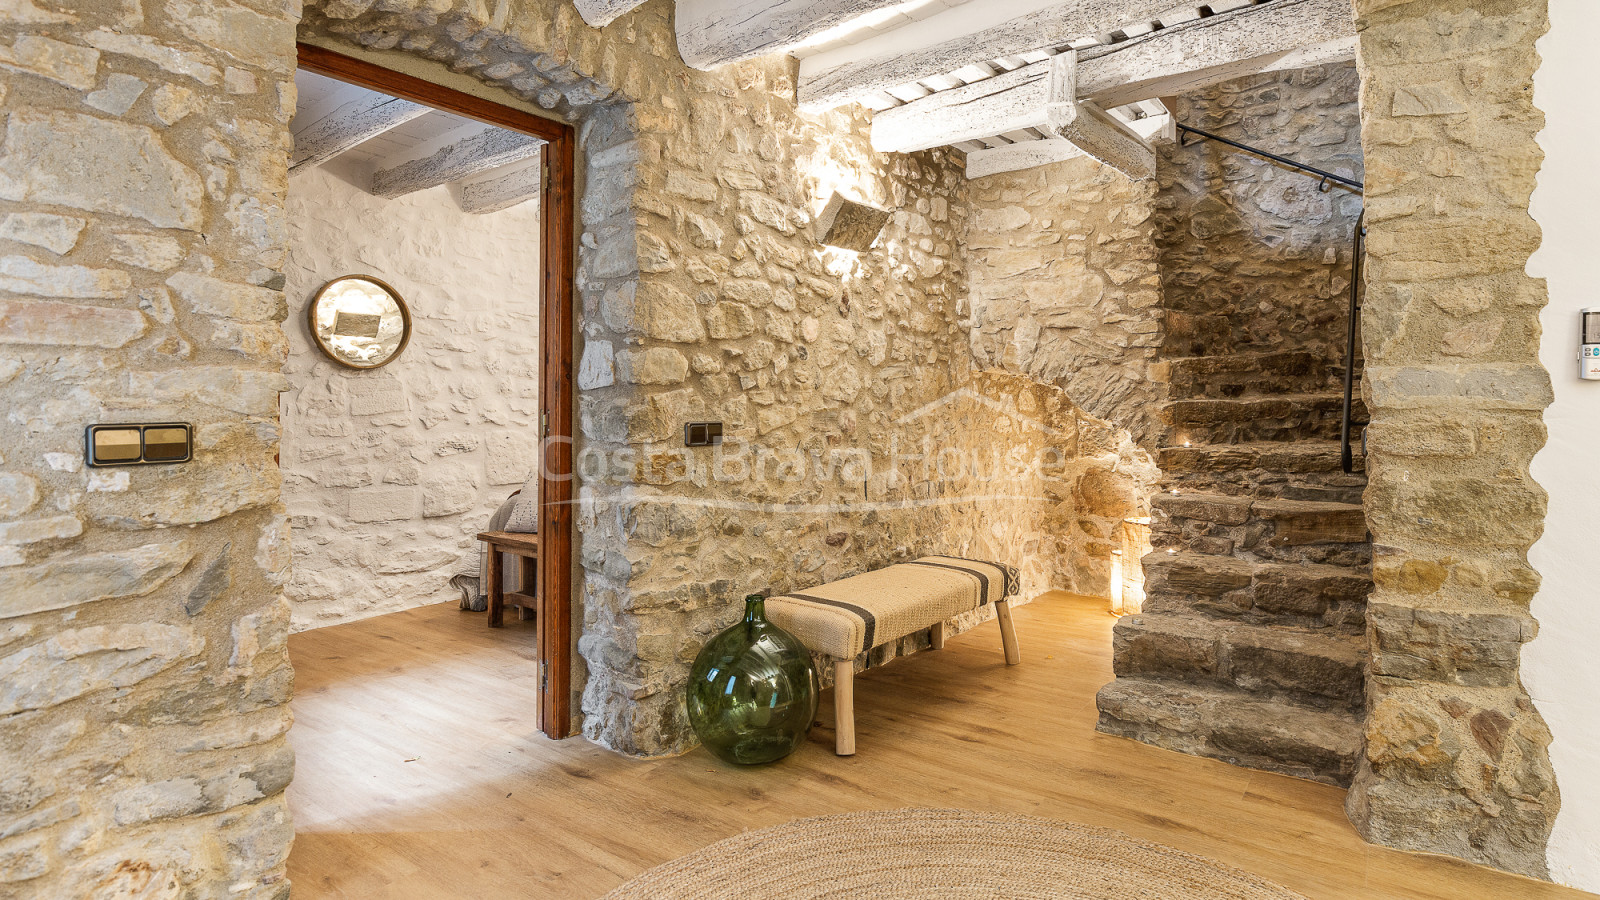 Antic paller reformat com a casa rústica amb encant a Jafre, Baix Empordà